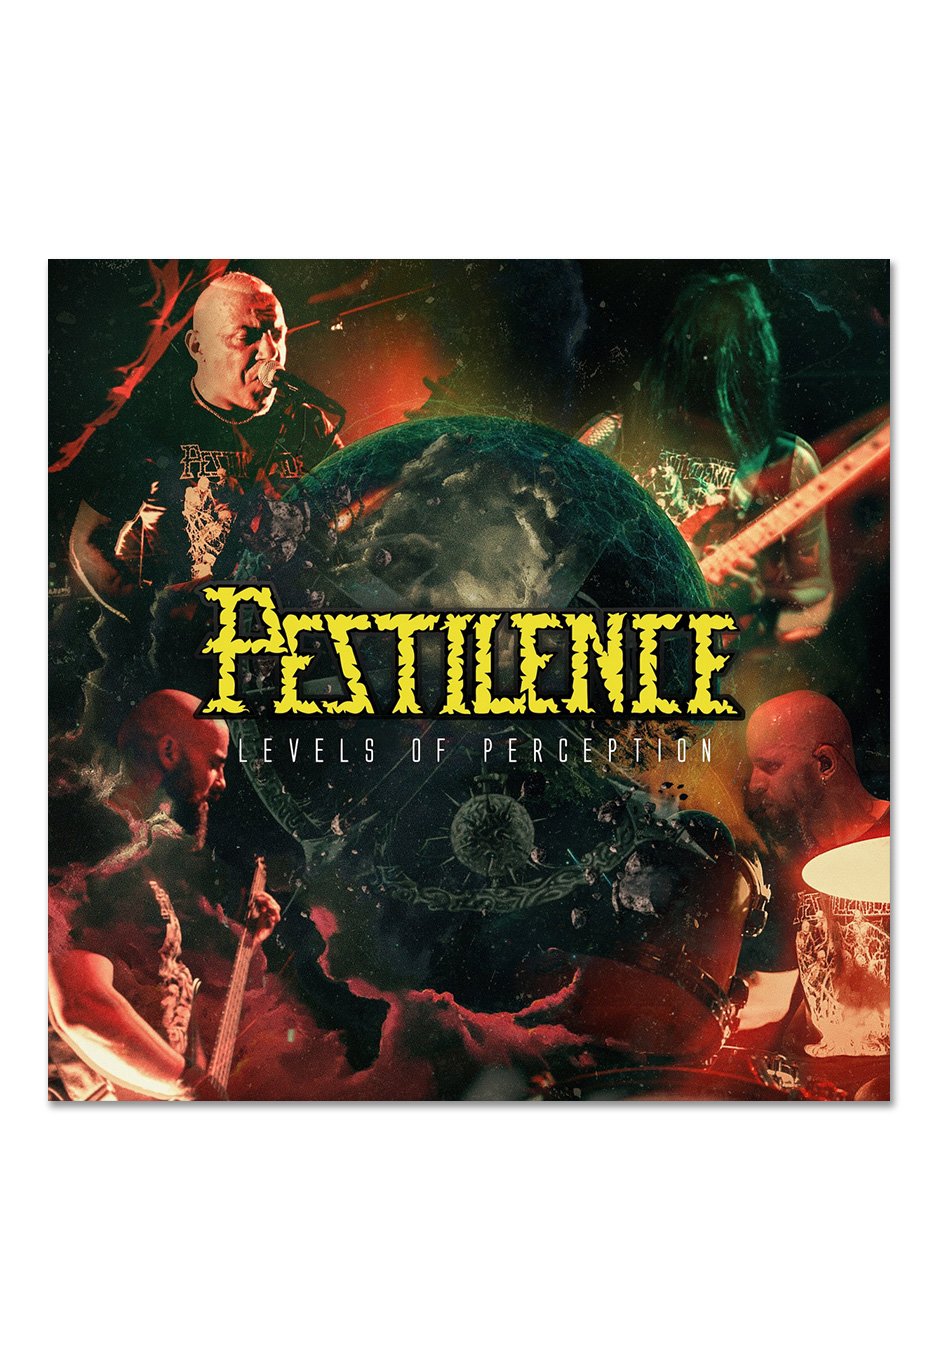 Pestilence - Levels Of Perception Ltd. Green - Colored Vinyl